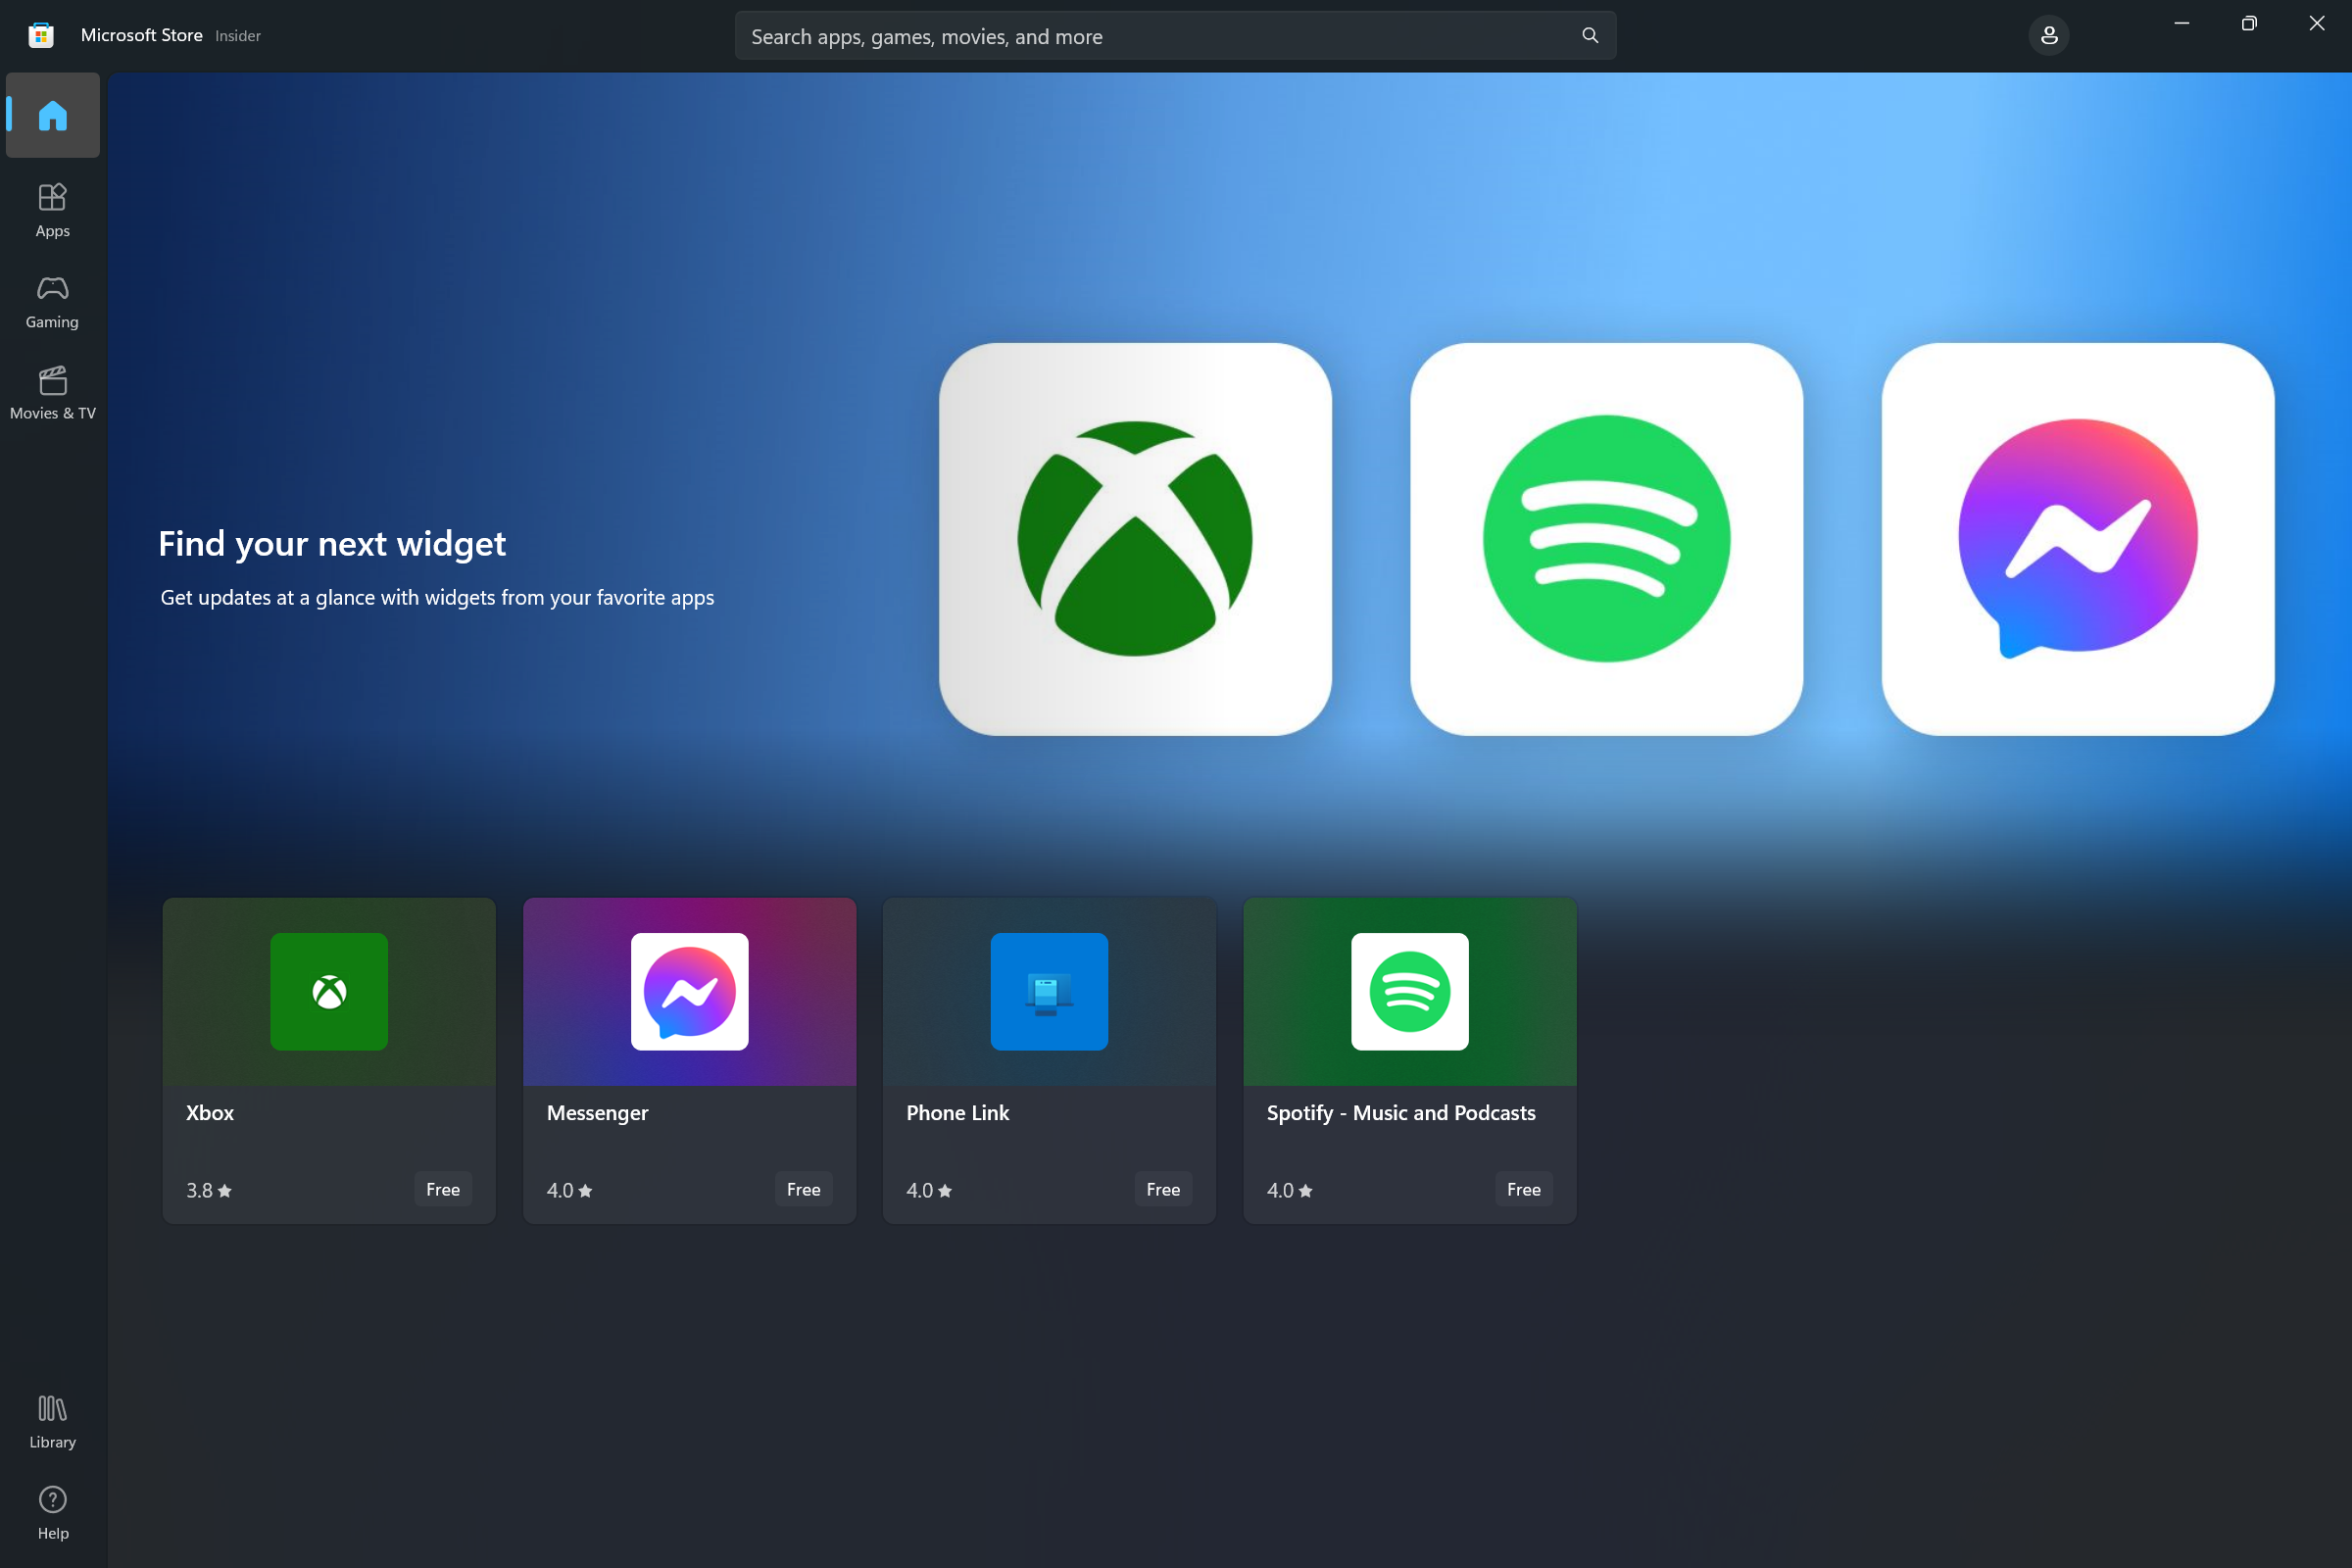 Снимок экрана: Microsoft Store с коллекцией мини-приложений, которая позволяет пользователям обнаруживать приложения с мини-приложениями Windows.